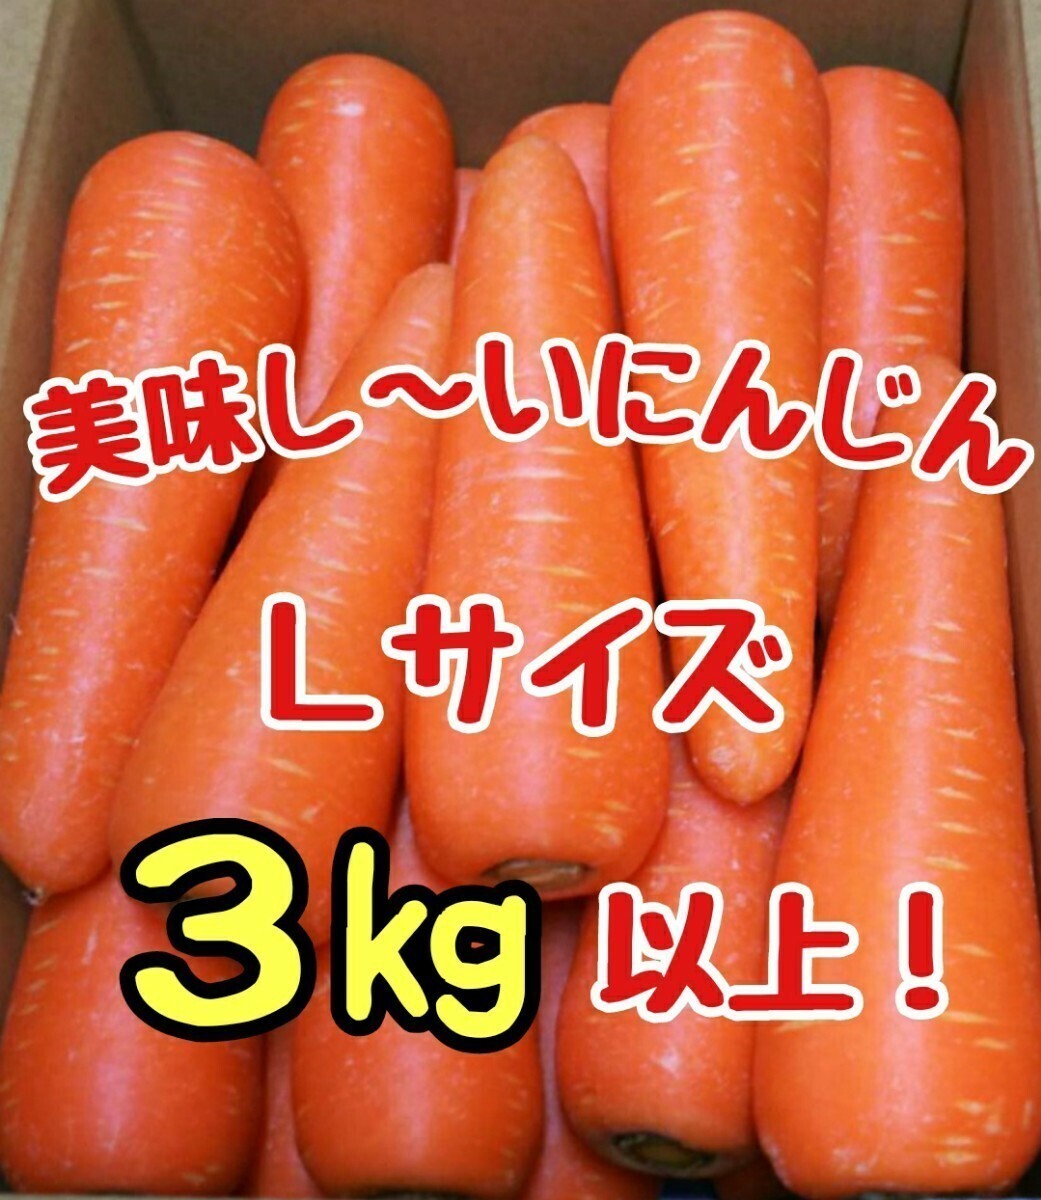  прекрасный тест .. морковь!L размер!3. и больше!